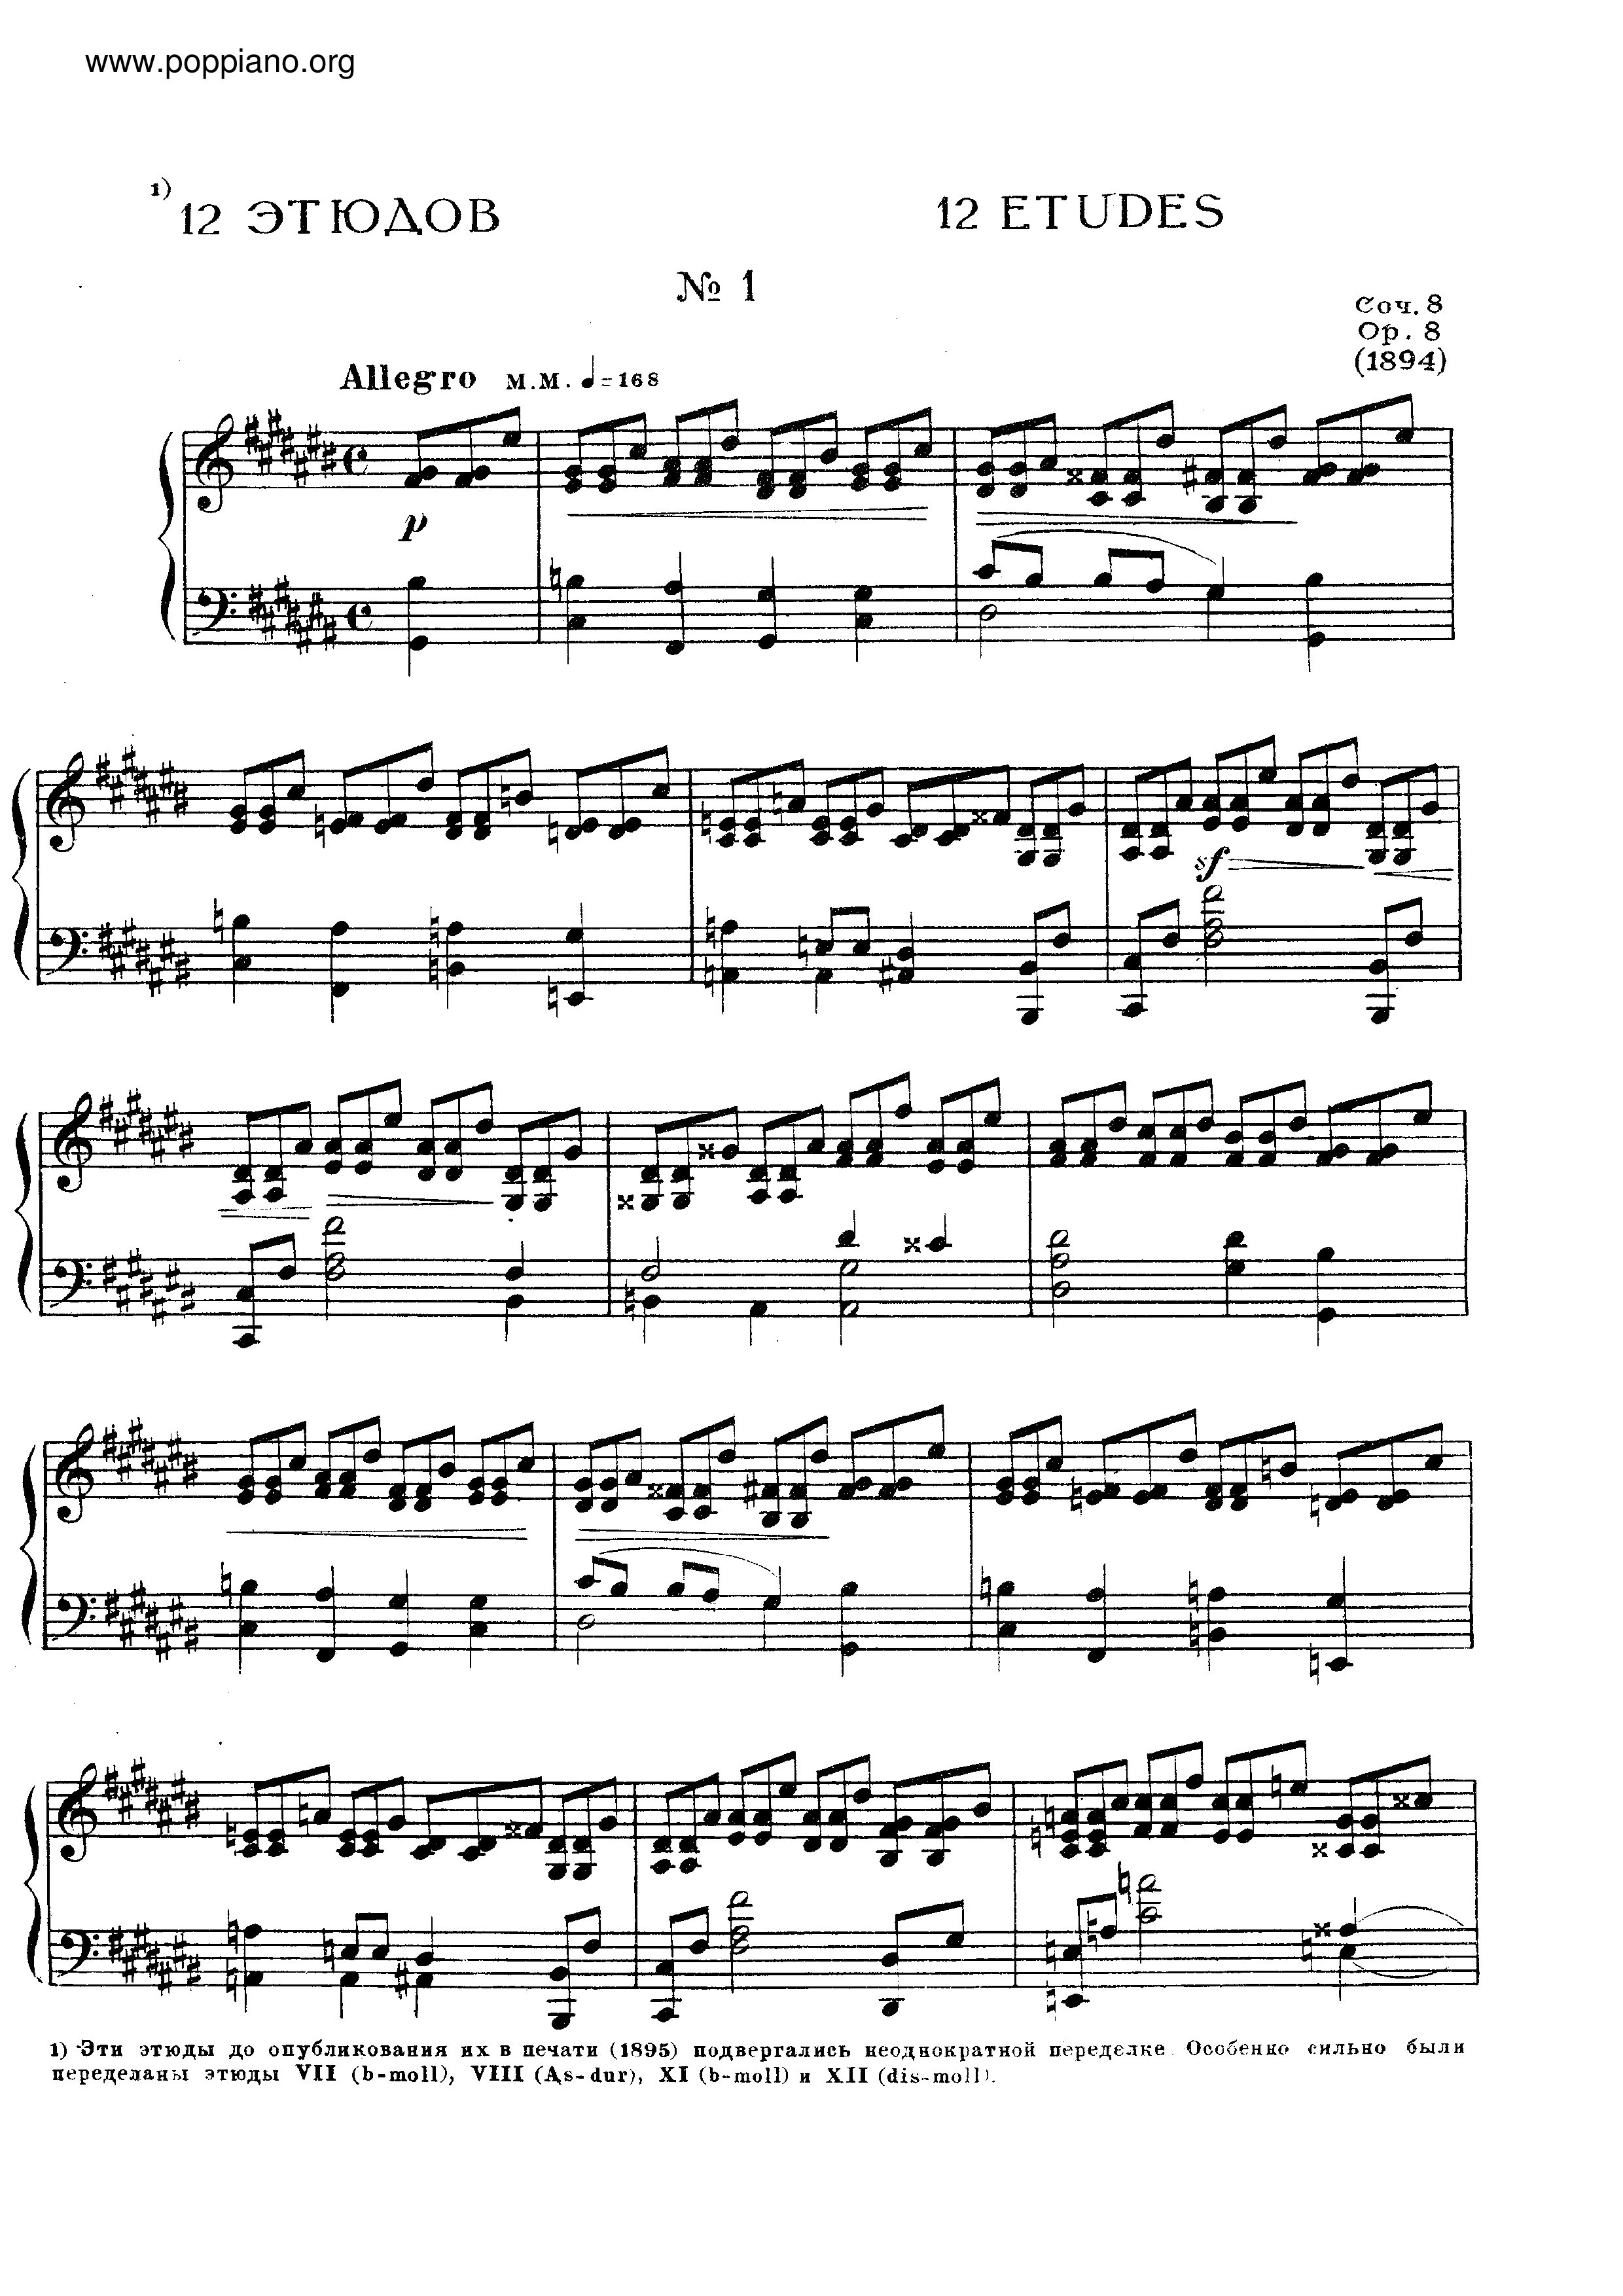 No.1 Etude in C sharp minor, Op.8ピアノ譜